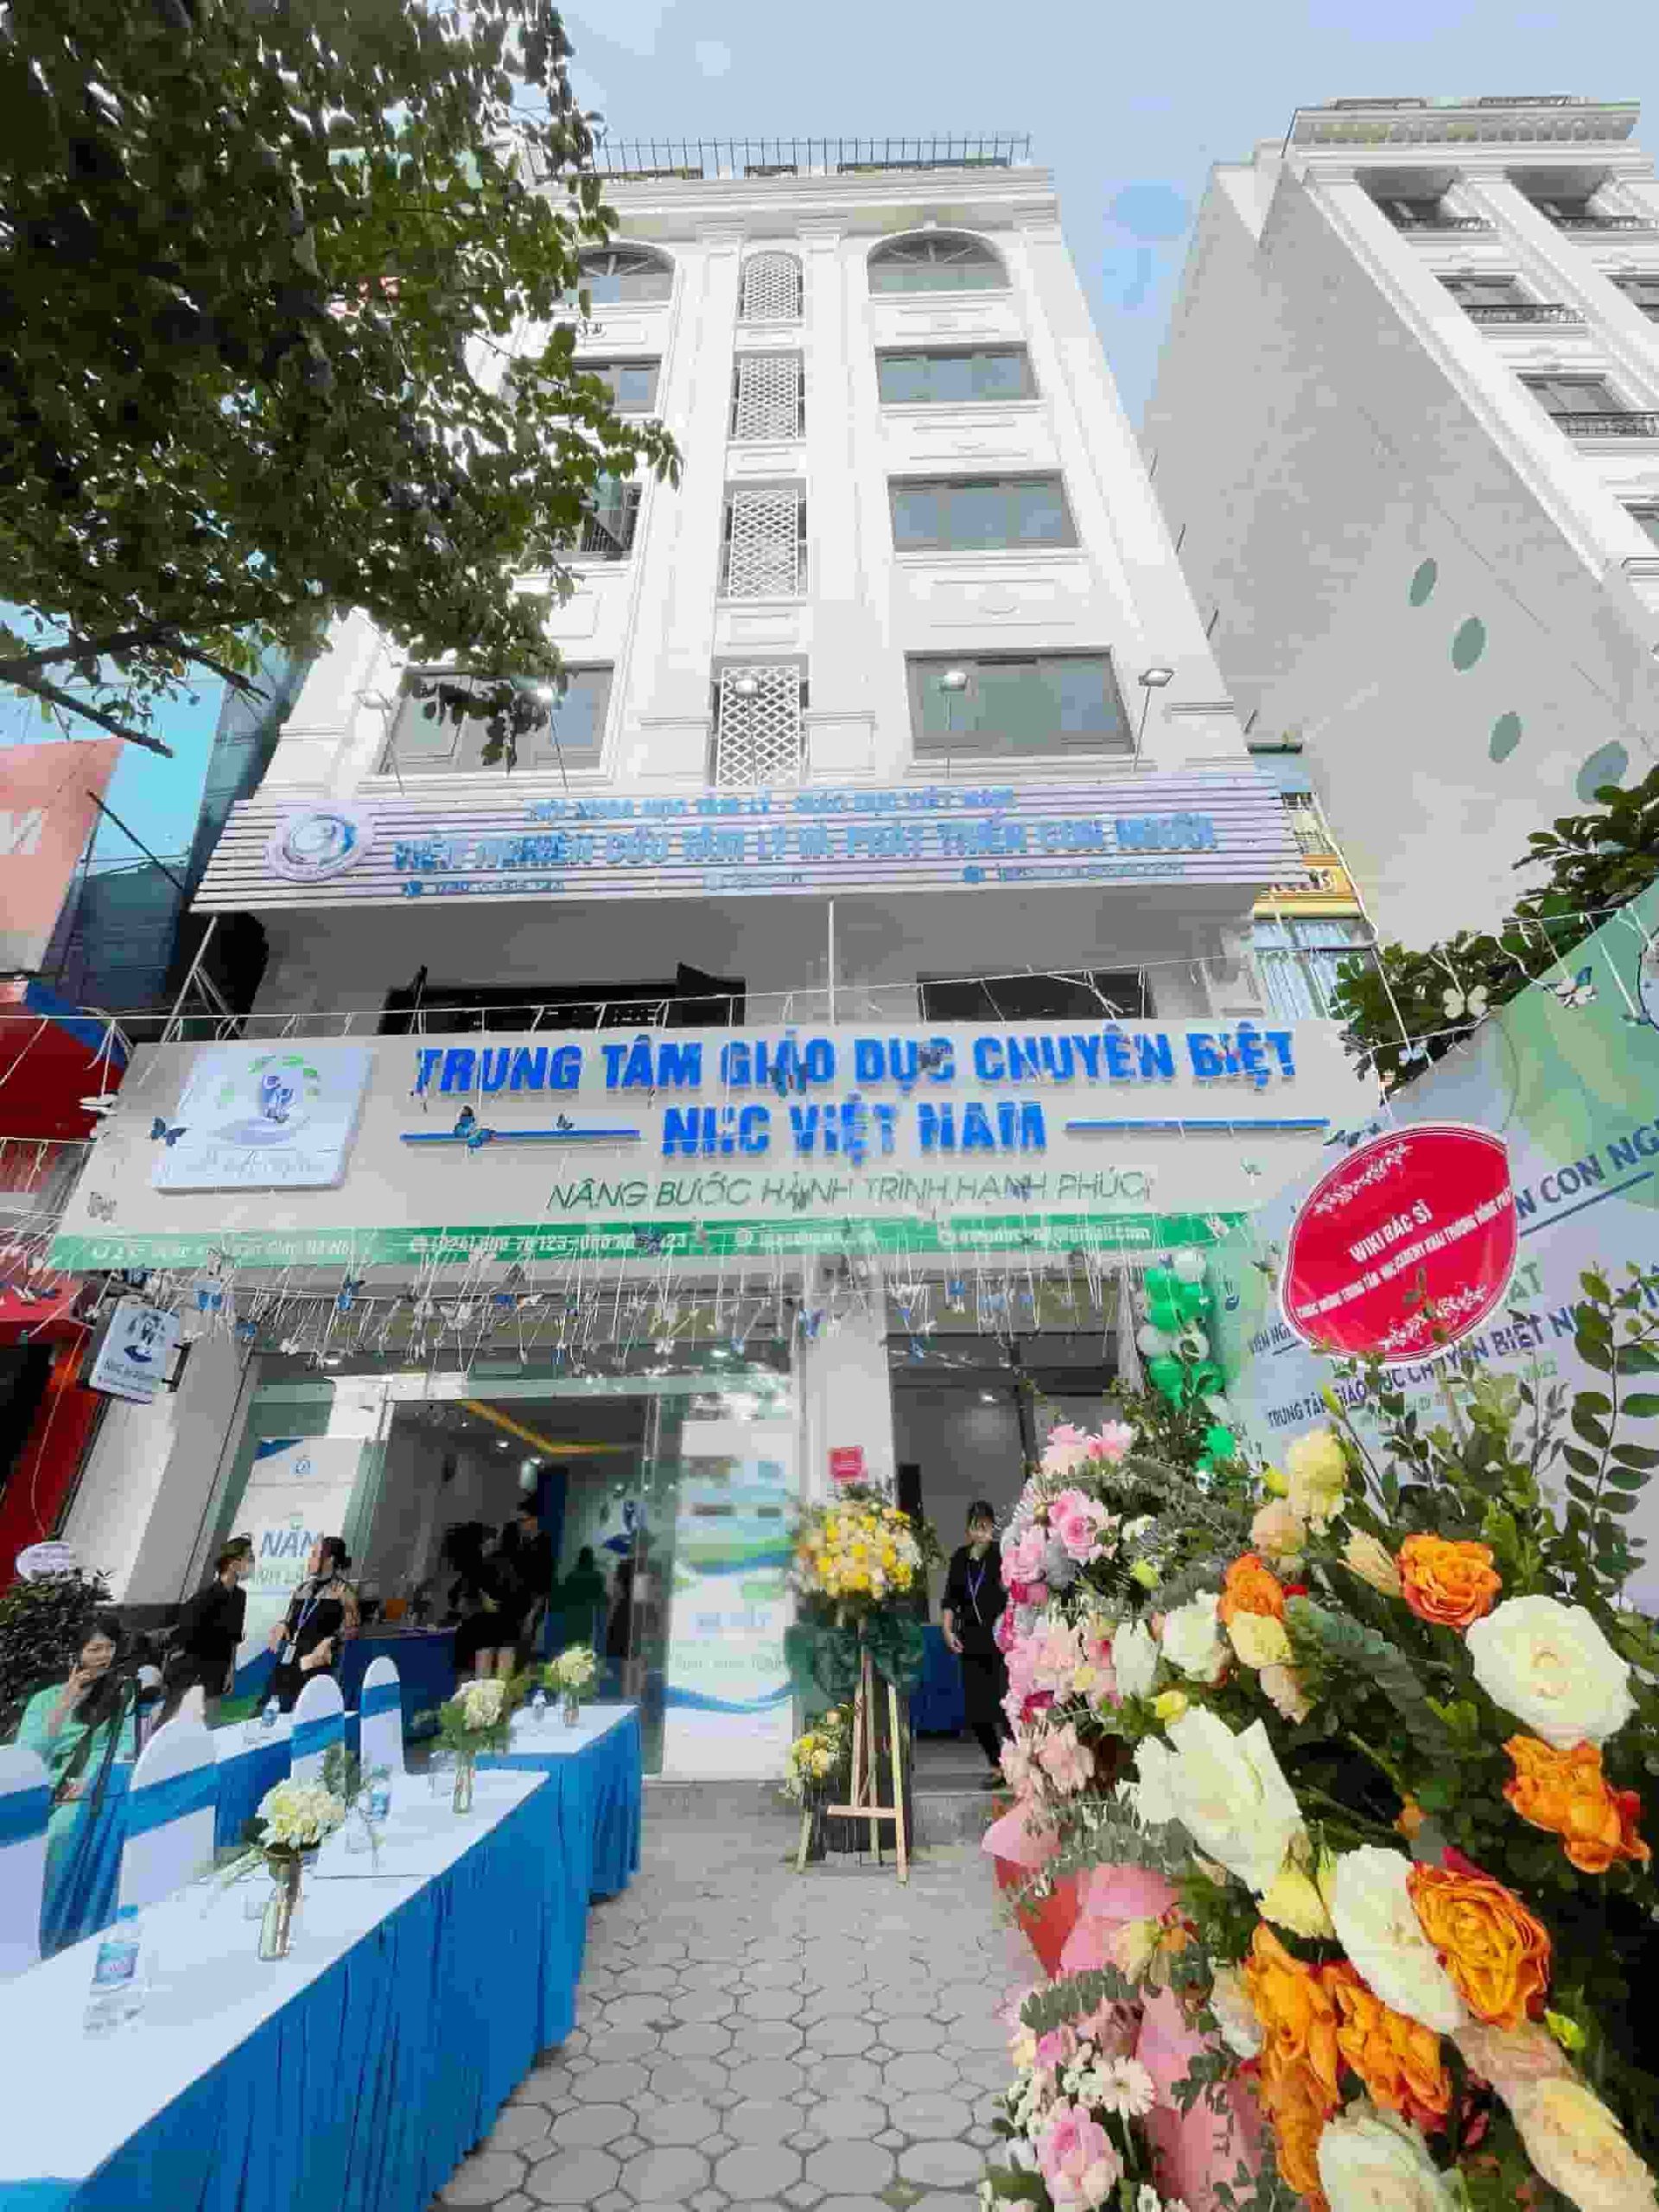 Ra mắt Trung tâm Giáo dục Chuyên biệt NHC Việt Nam – NHC Academy đầu tiên tại Hà Nội 